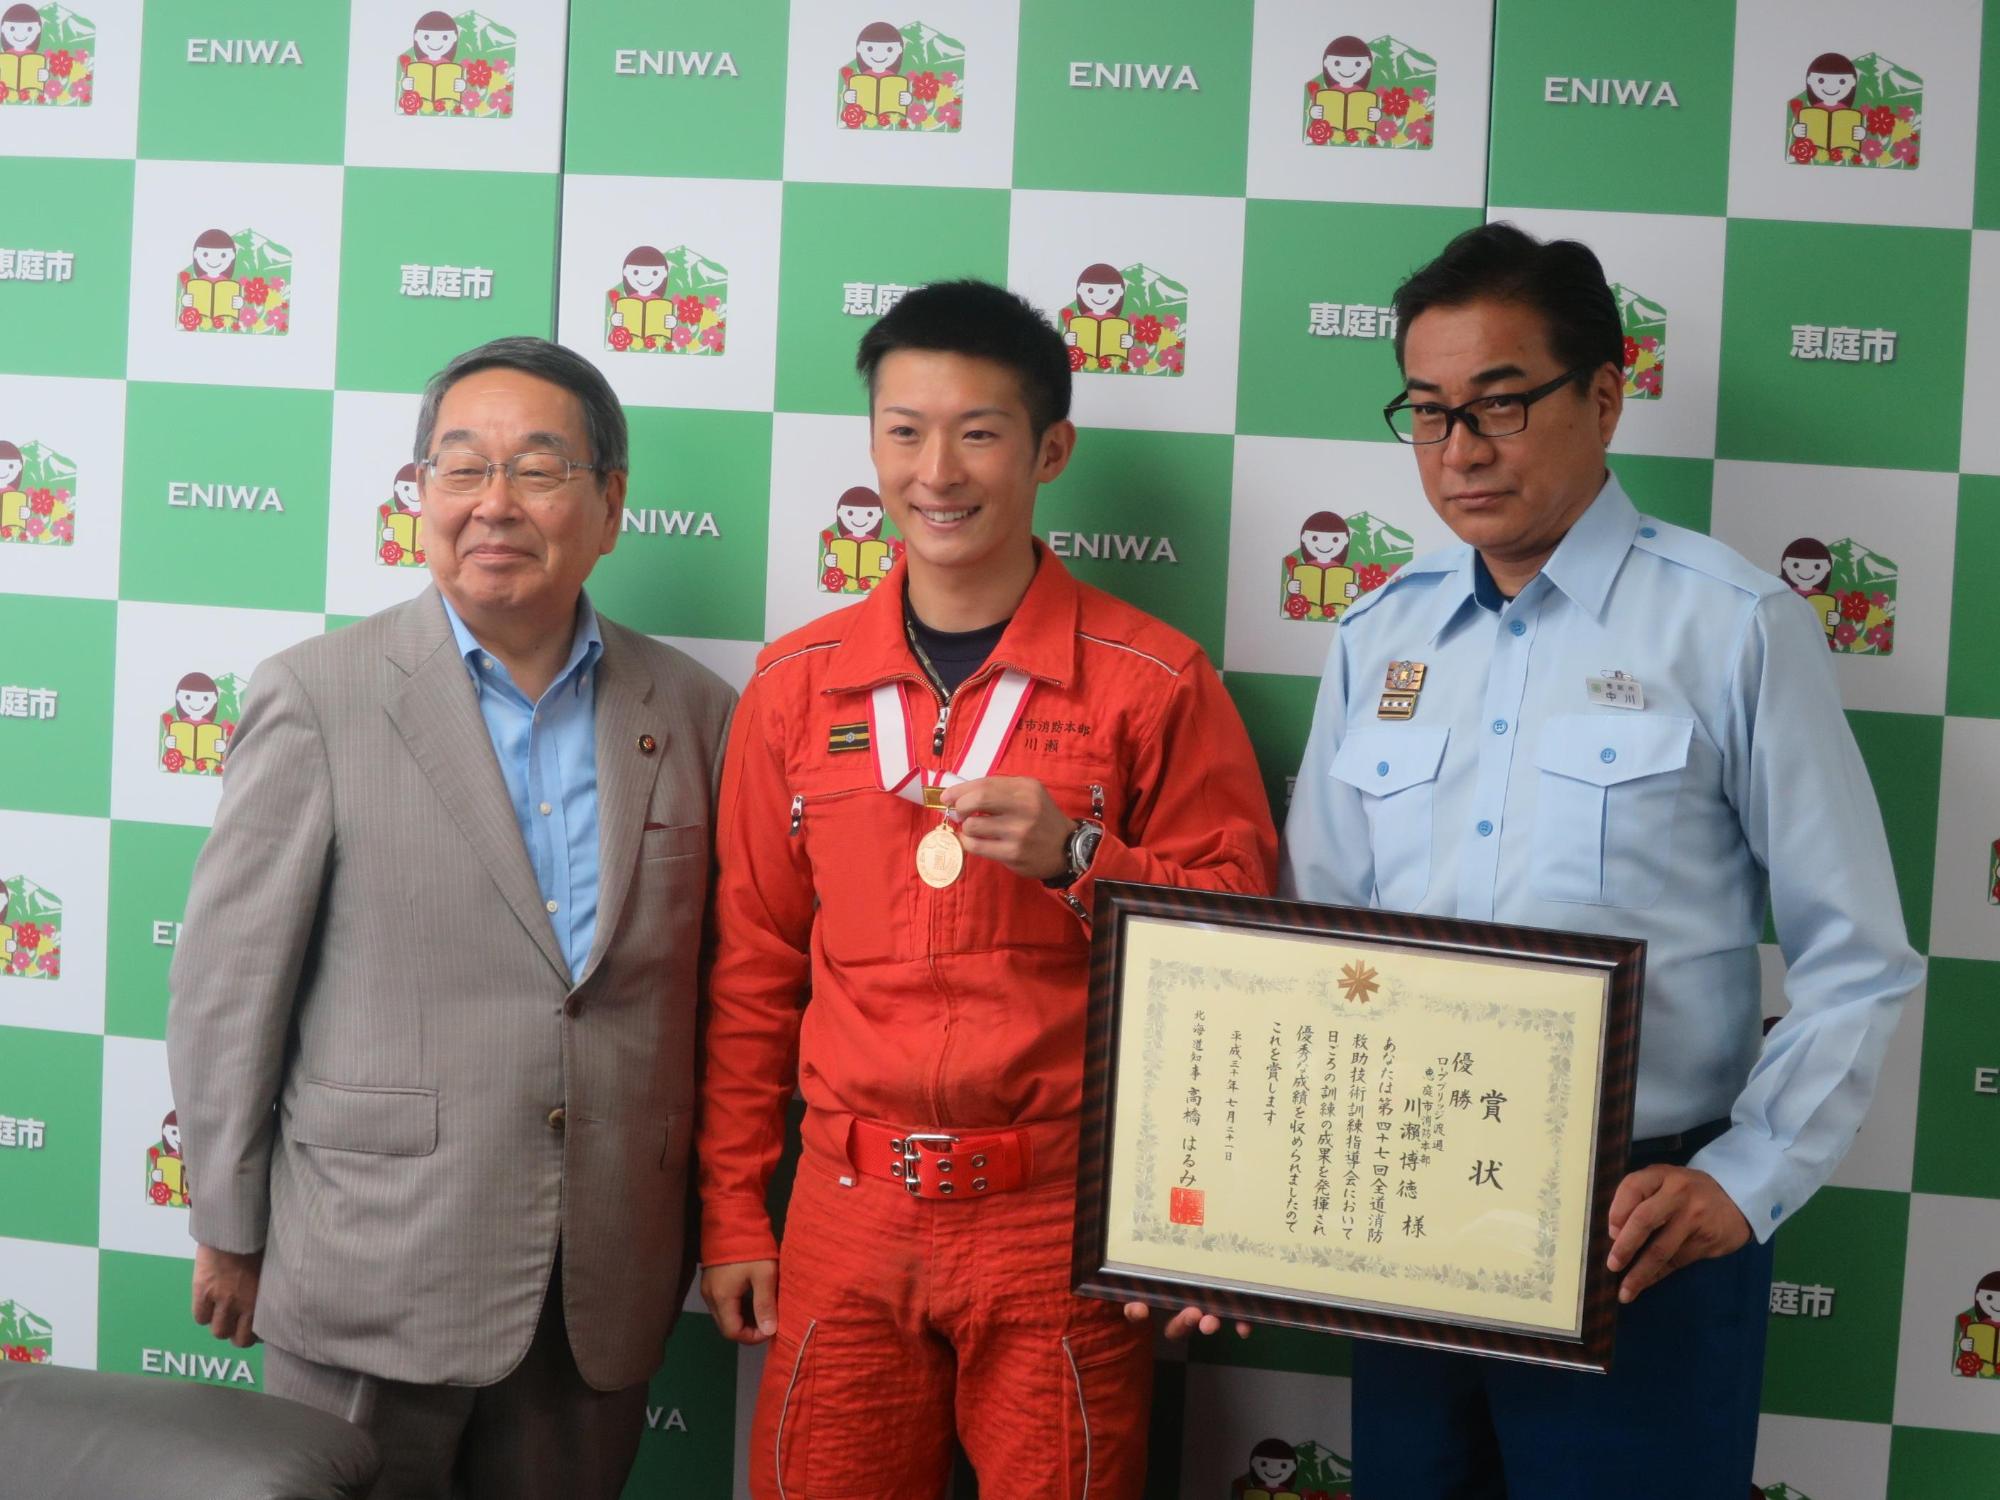 原田市長とメダルを掛けた川瀬さんの記念写真